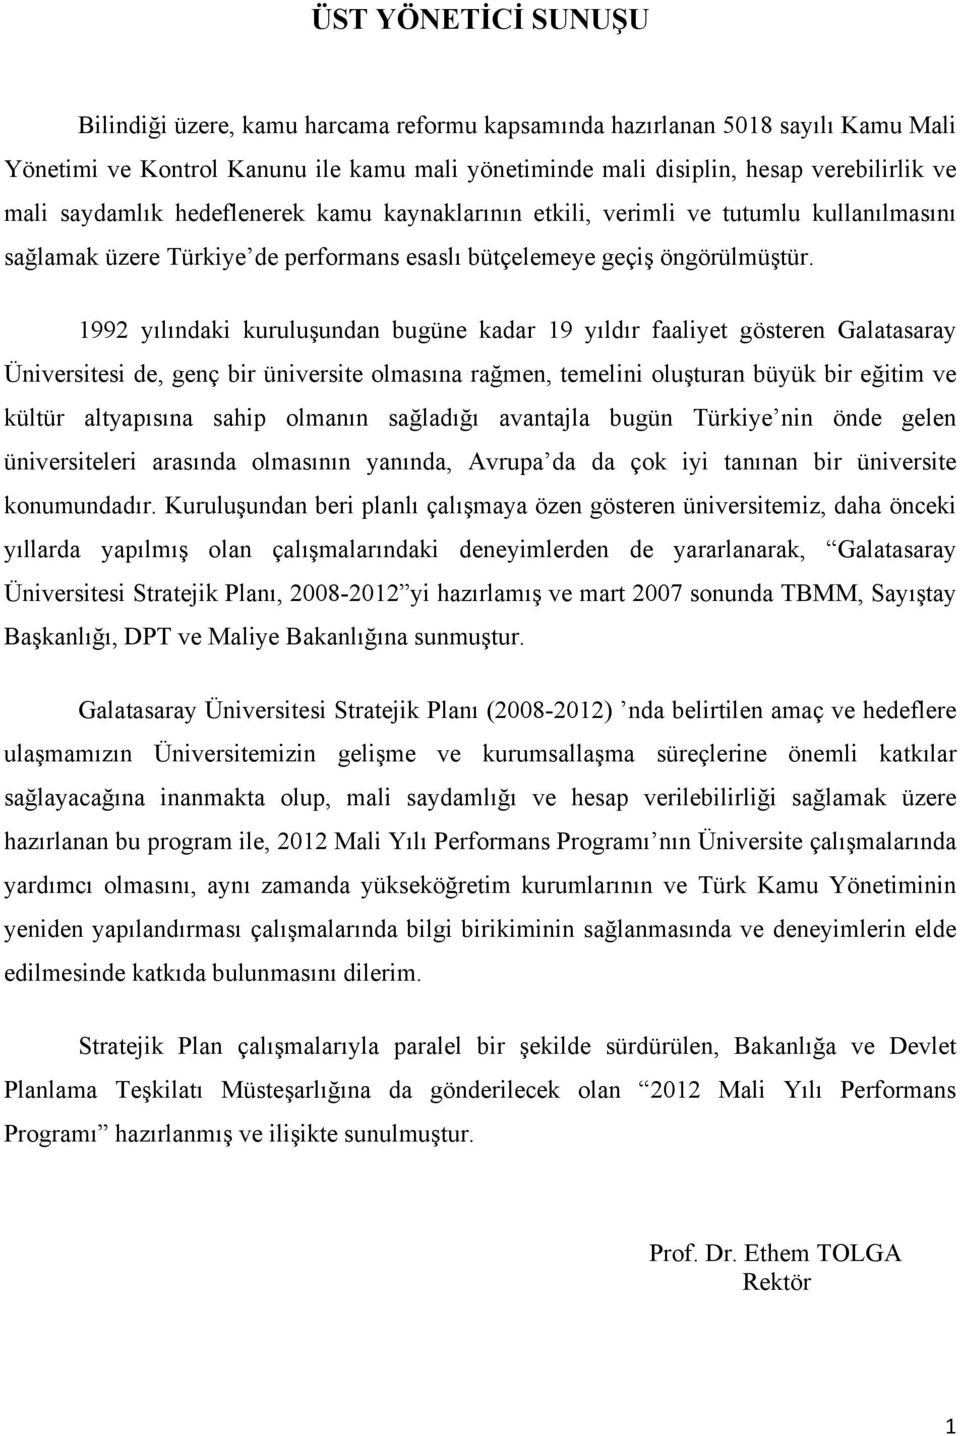 1992 yılındaki kuruluşundan bugüne kadar 19 yıldır faaliyet gösteren Galatasaray Üniversitesi de, genç bir üniversite olmasına rağmen, temelini oluşturan büyük bir eğitim ve kültür altyapısına sahip